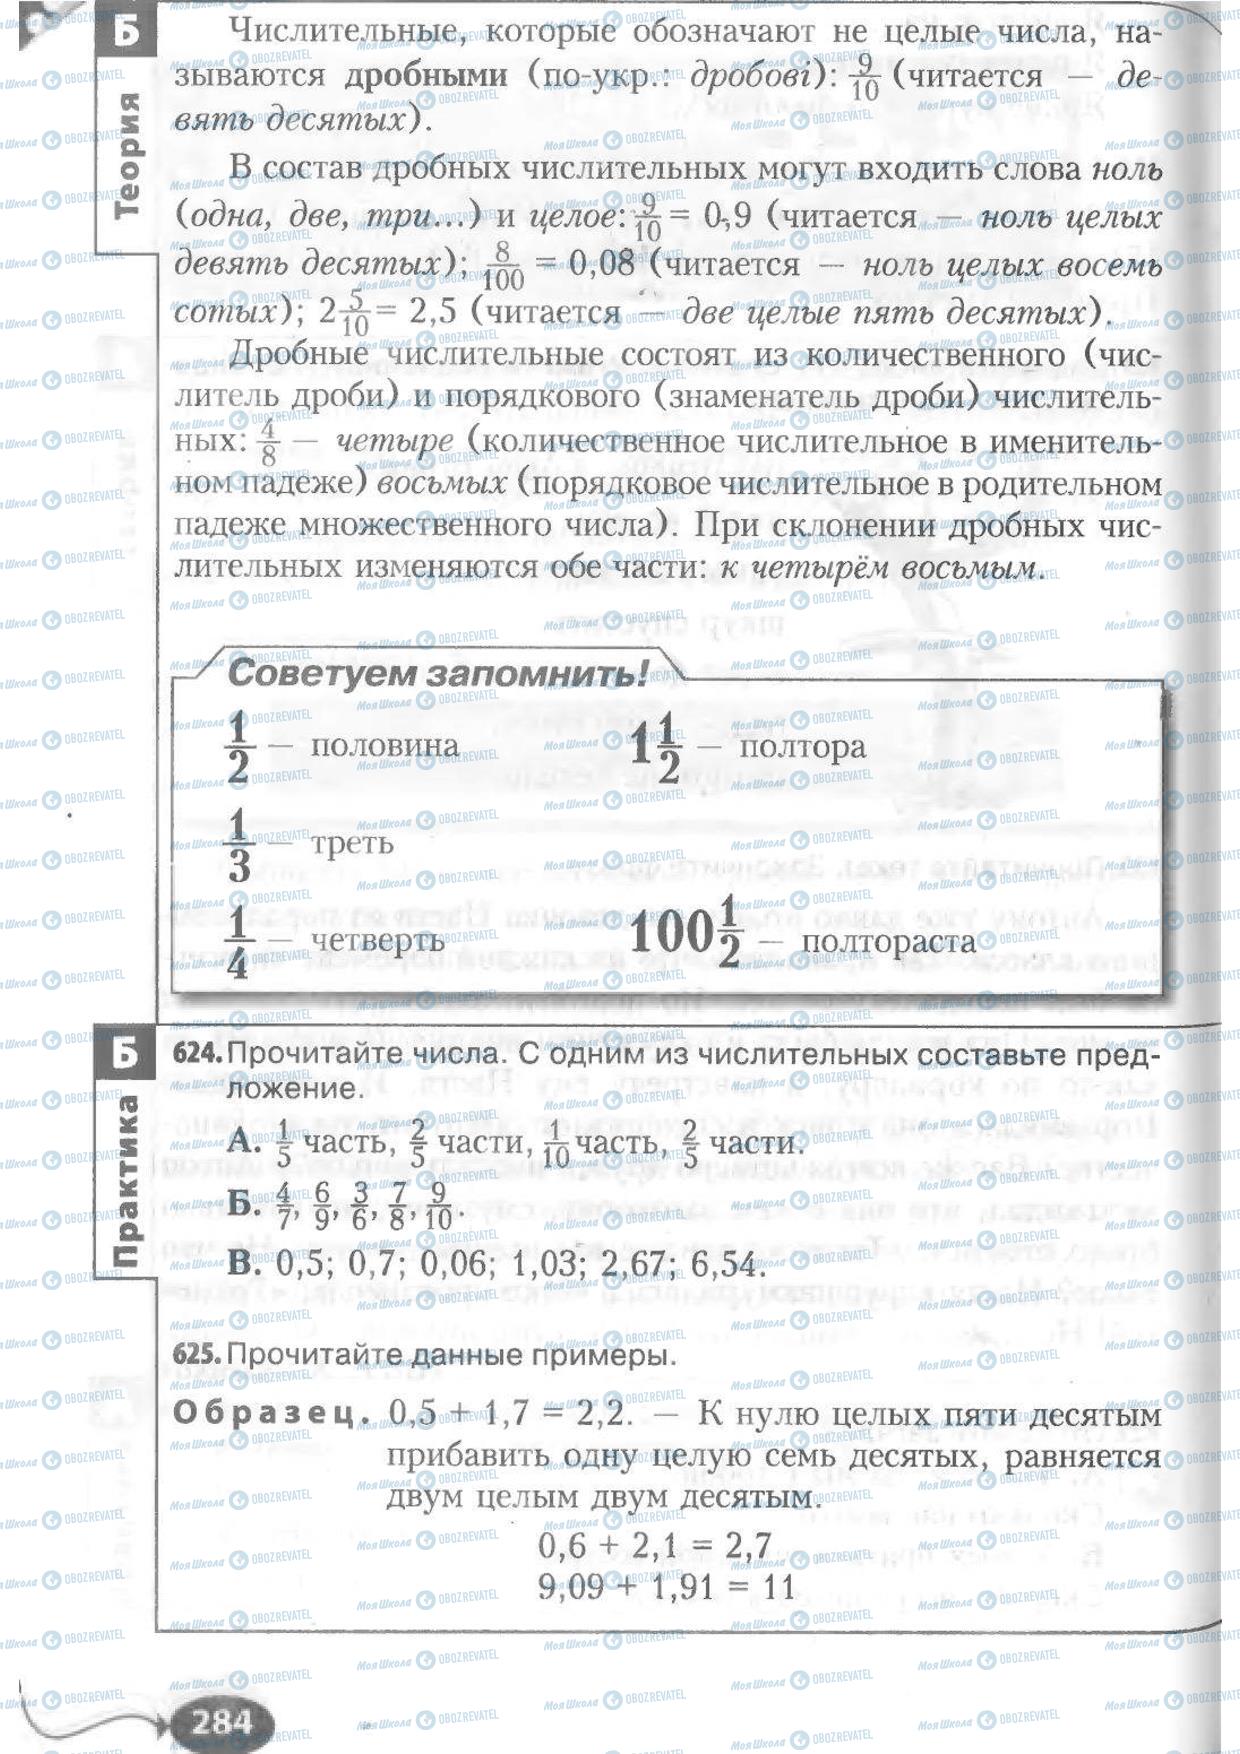 Учебники Русский язык 6 класс страница 284